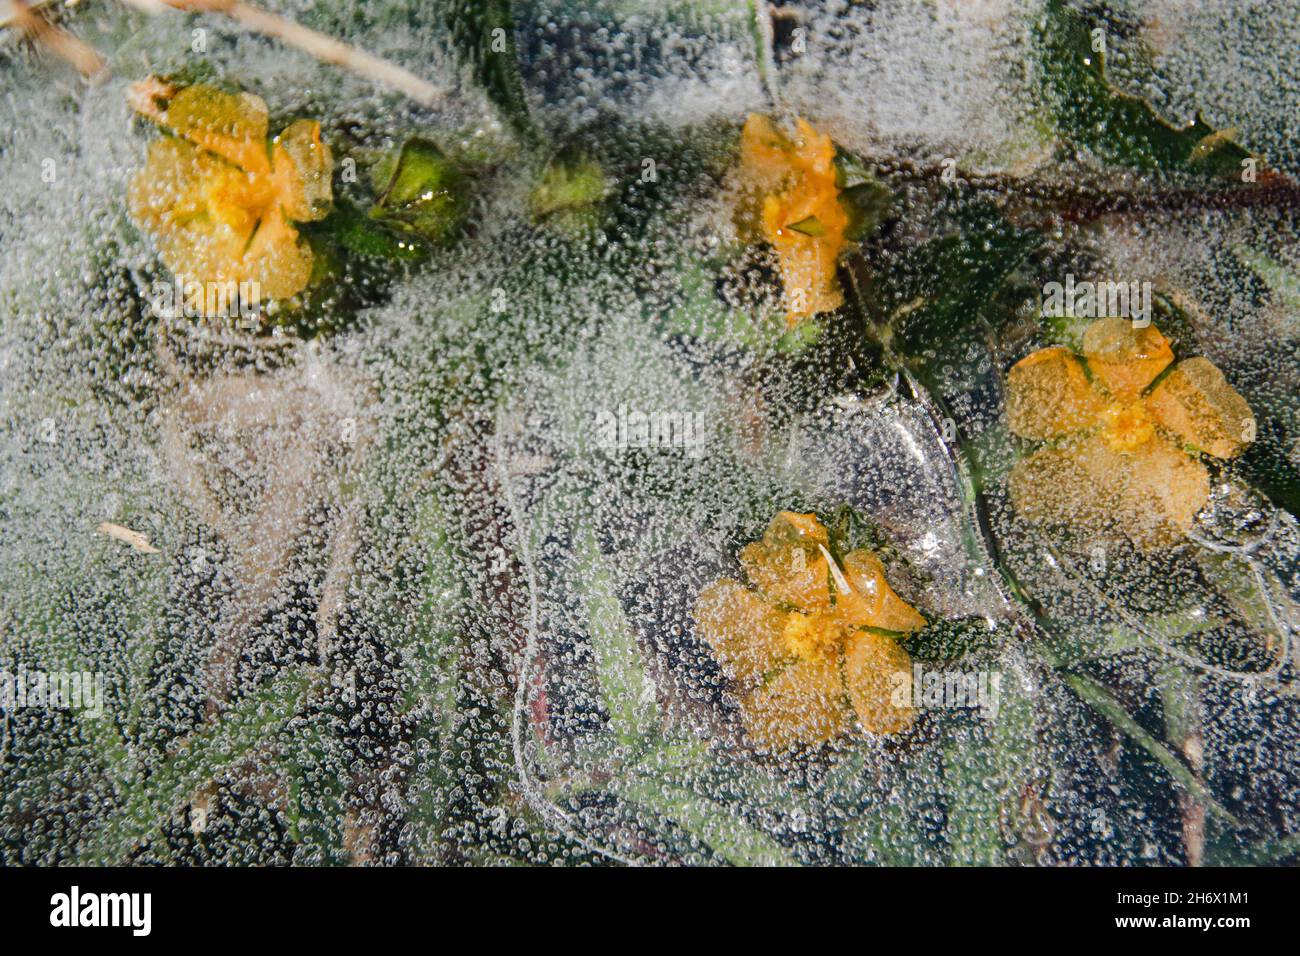 Gelbe Blüten, die im auftauenden Eis gefangen sind und das Konzept des Winters zeigen, der dem Frühling oder dem Saisonwechsel Platz macht Stockfoto